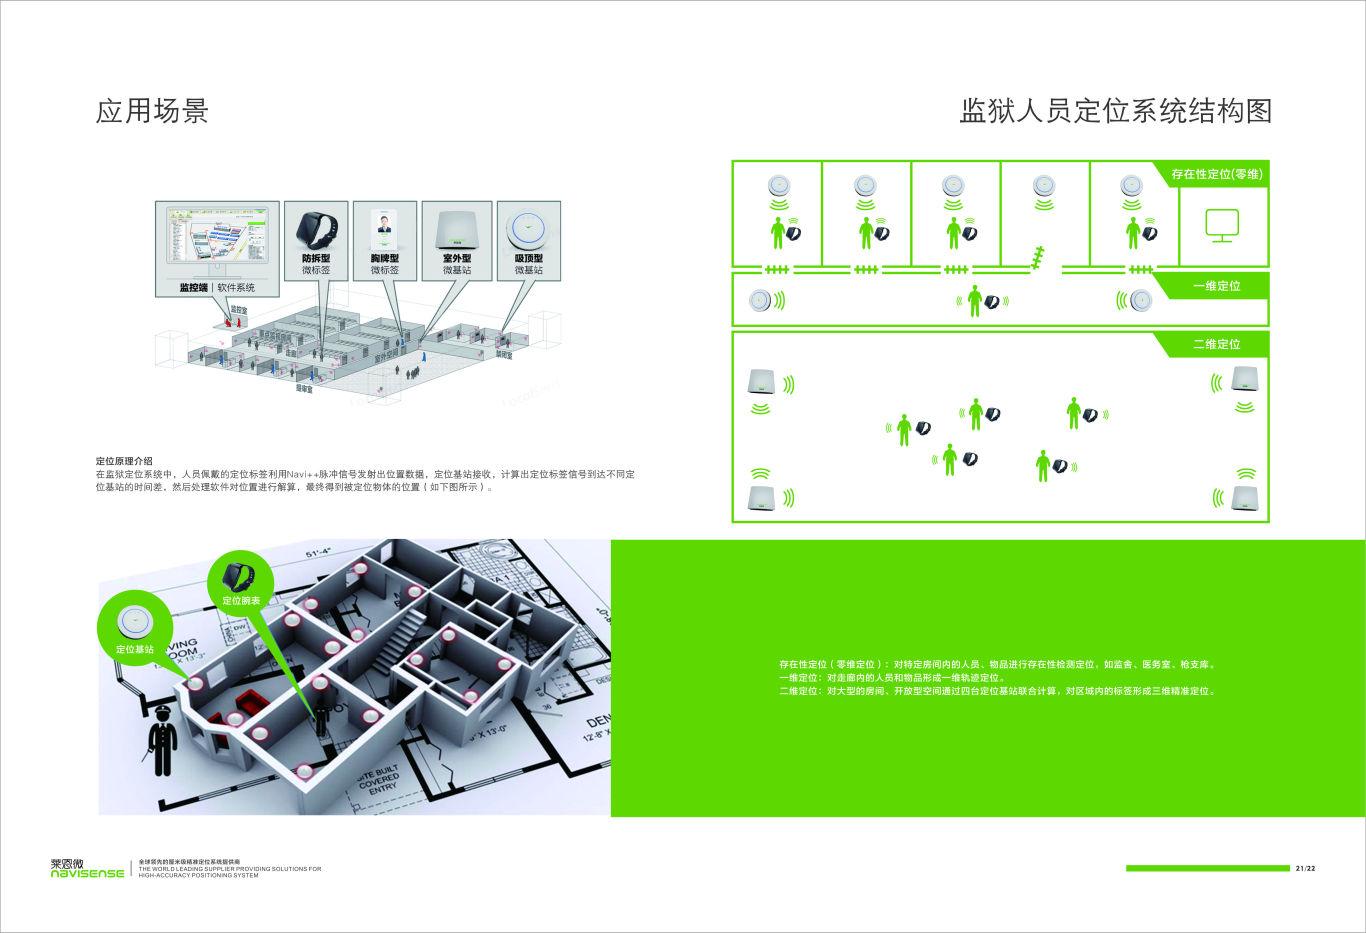 监狱人员定位系统平面设计展示图12